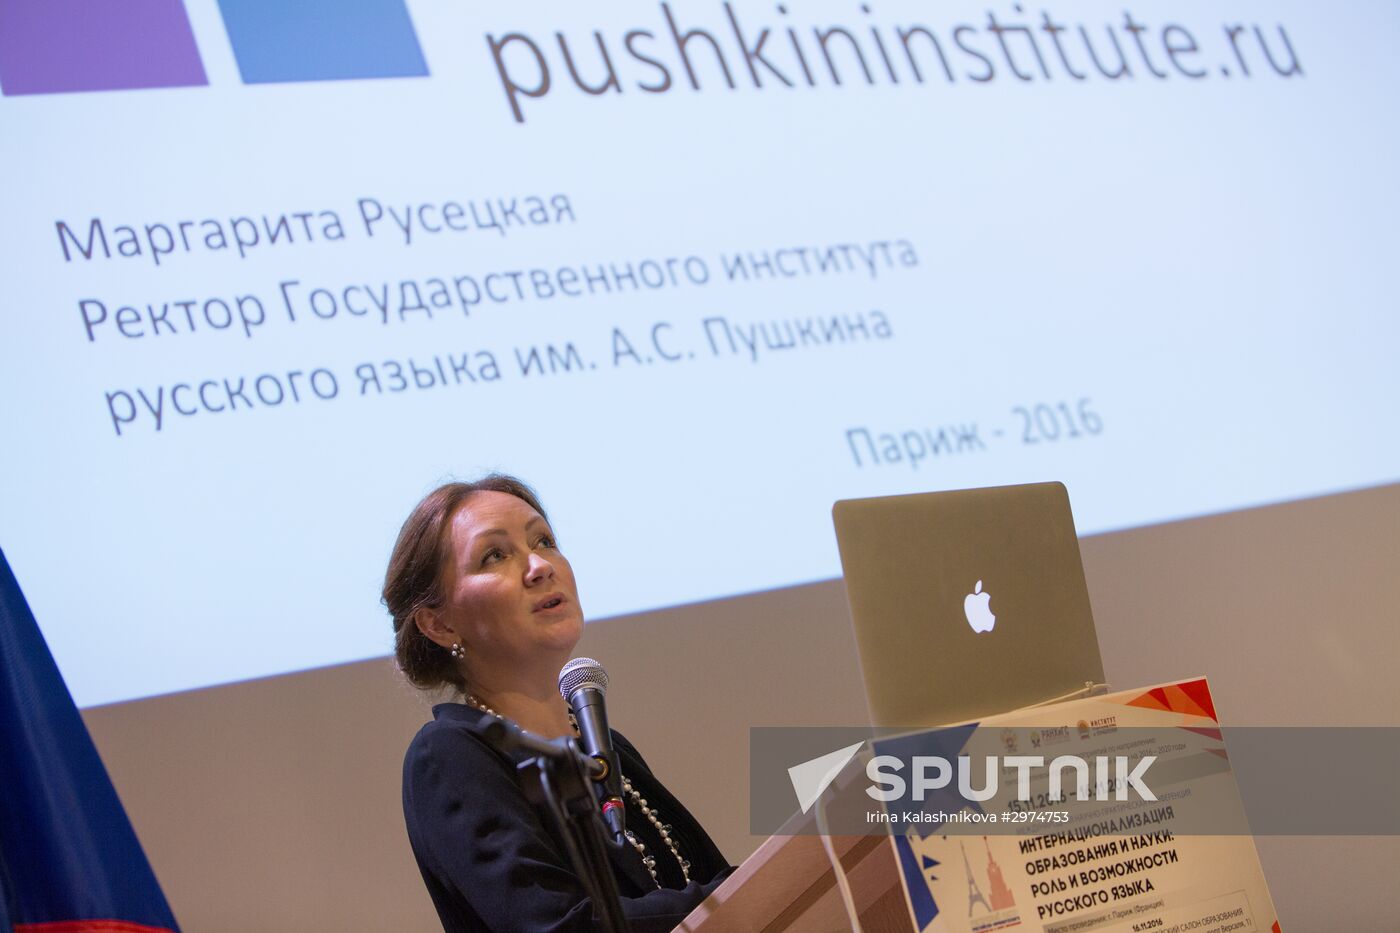 Pushkin Institute Russian language center opens in Paris